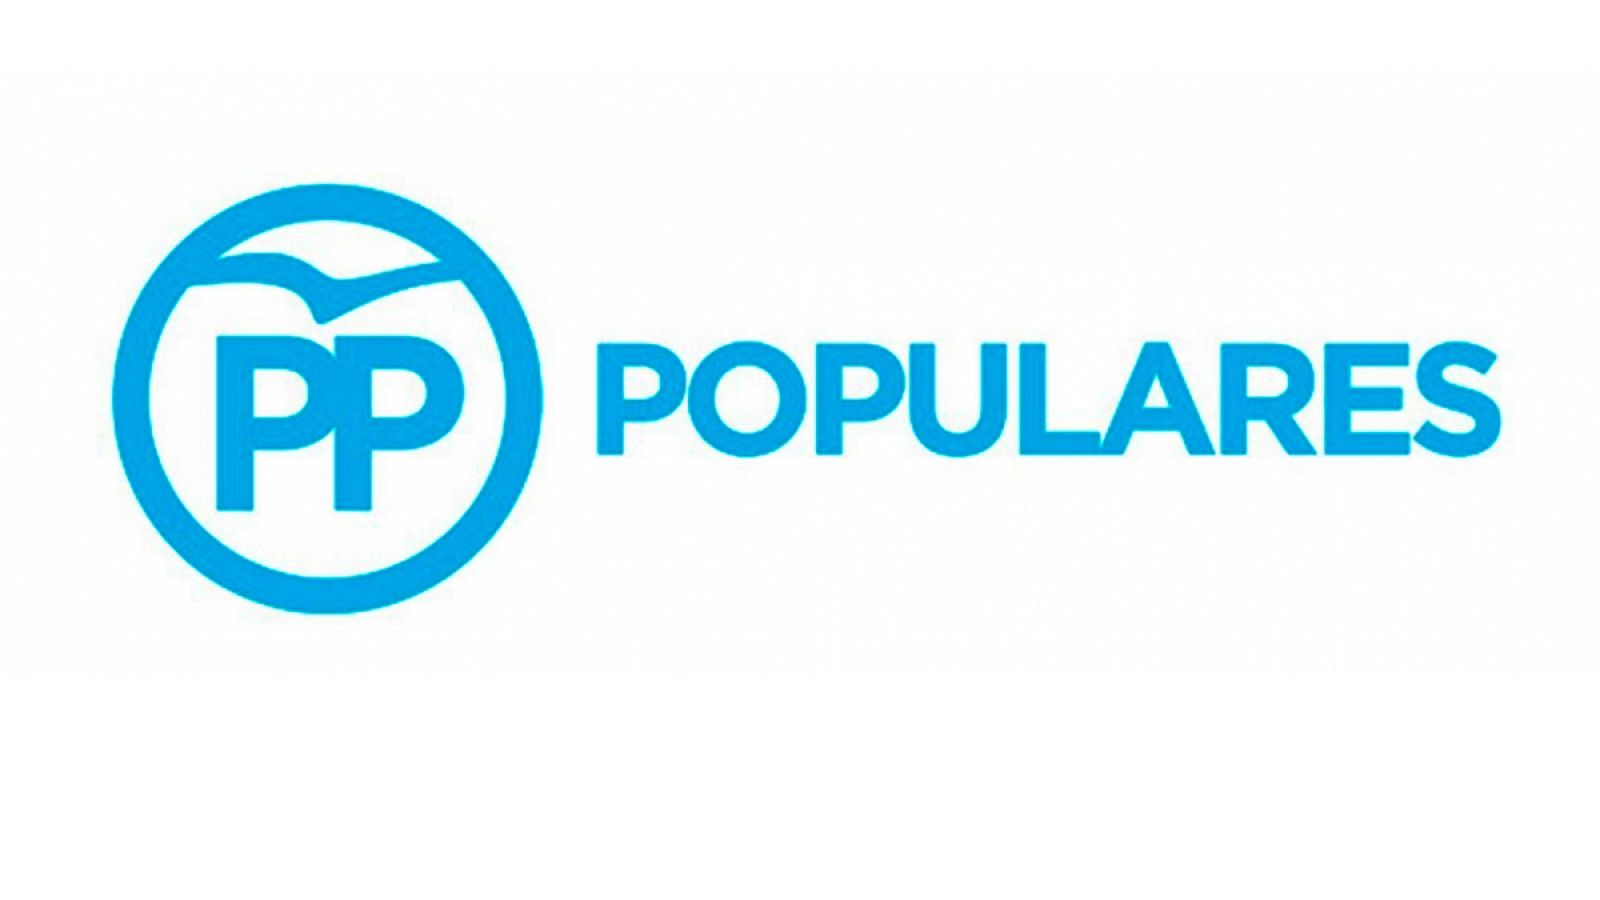 Logotipo del PP, cuyo último diseño se presentó en julio de 2015